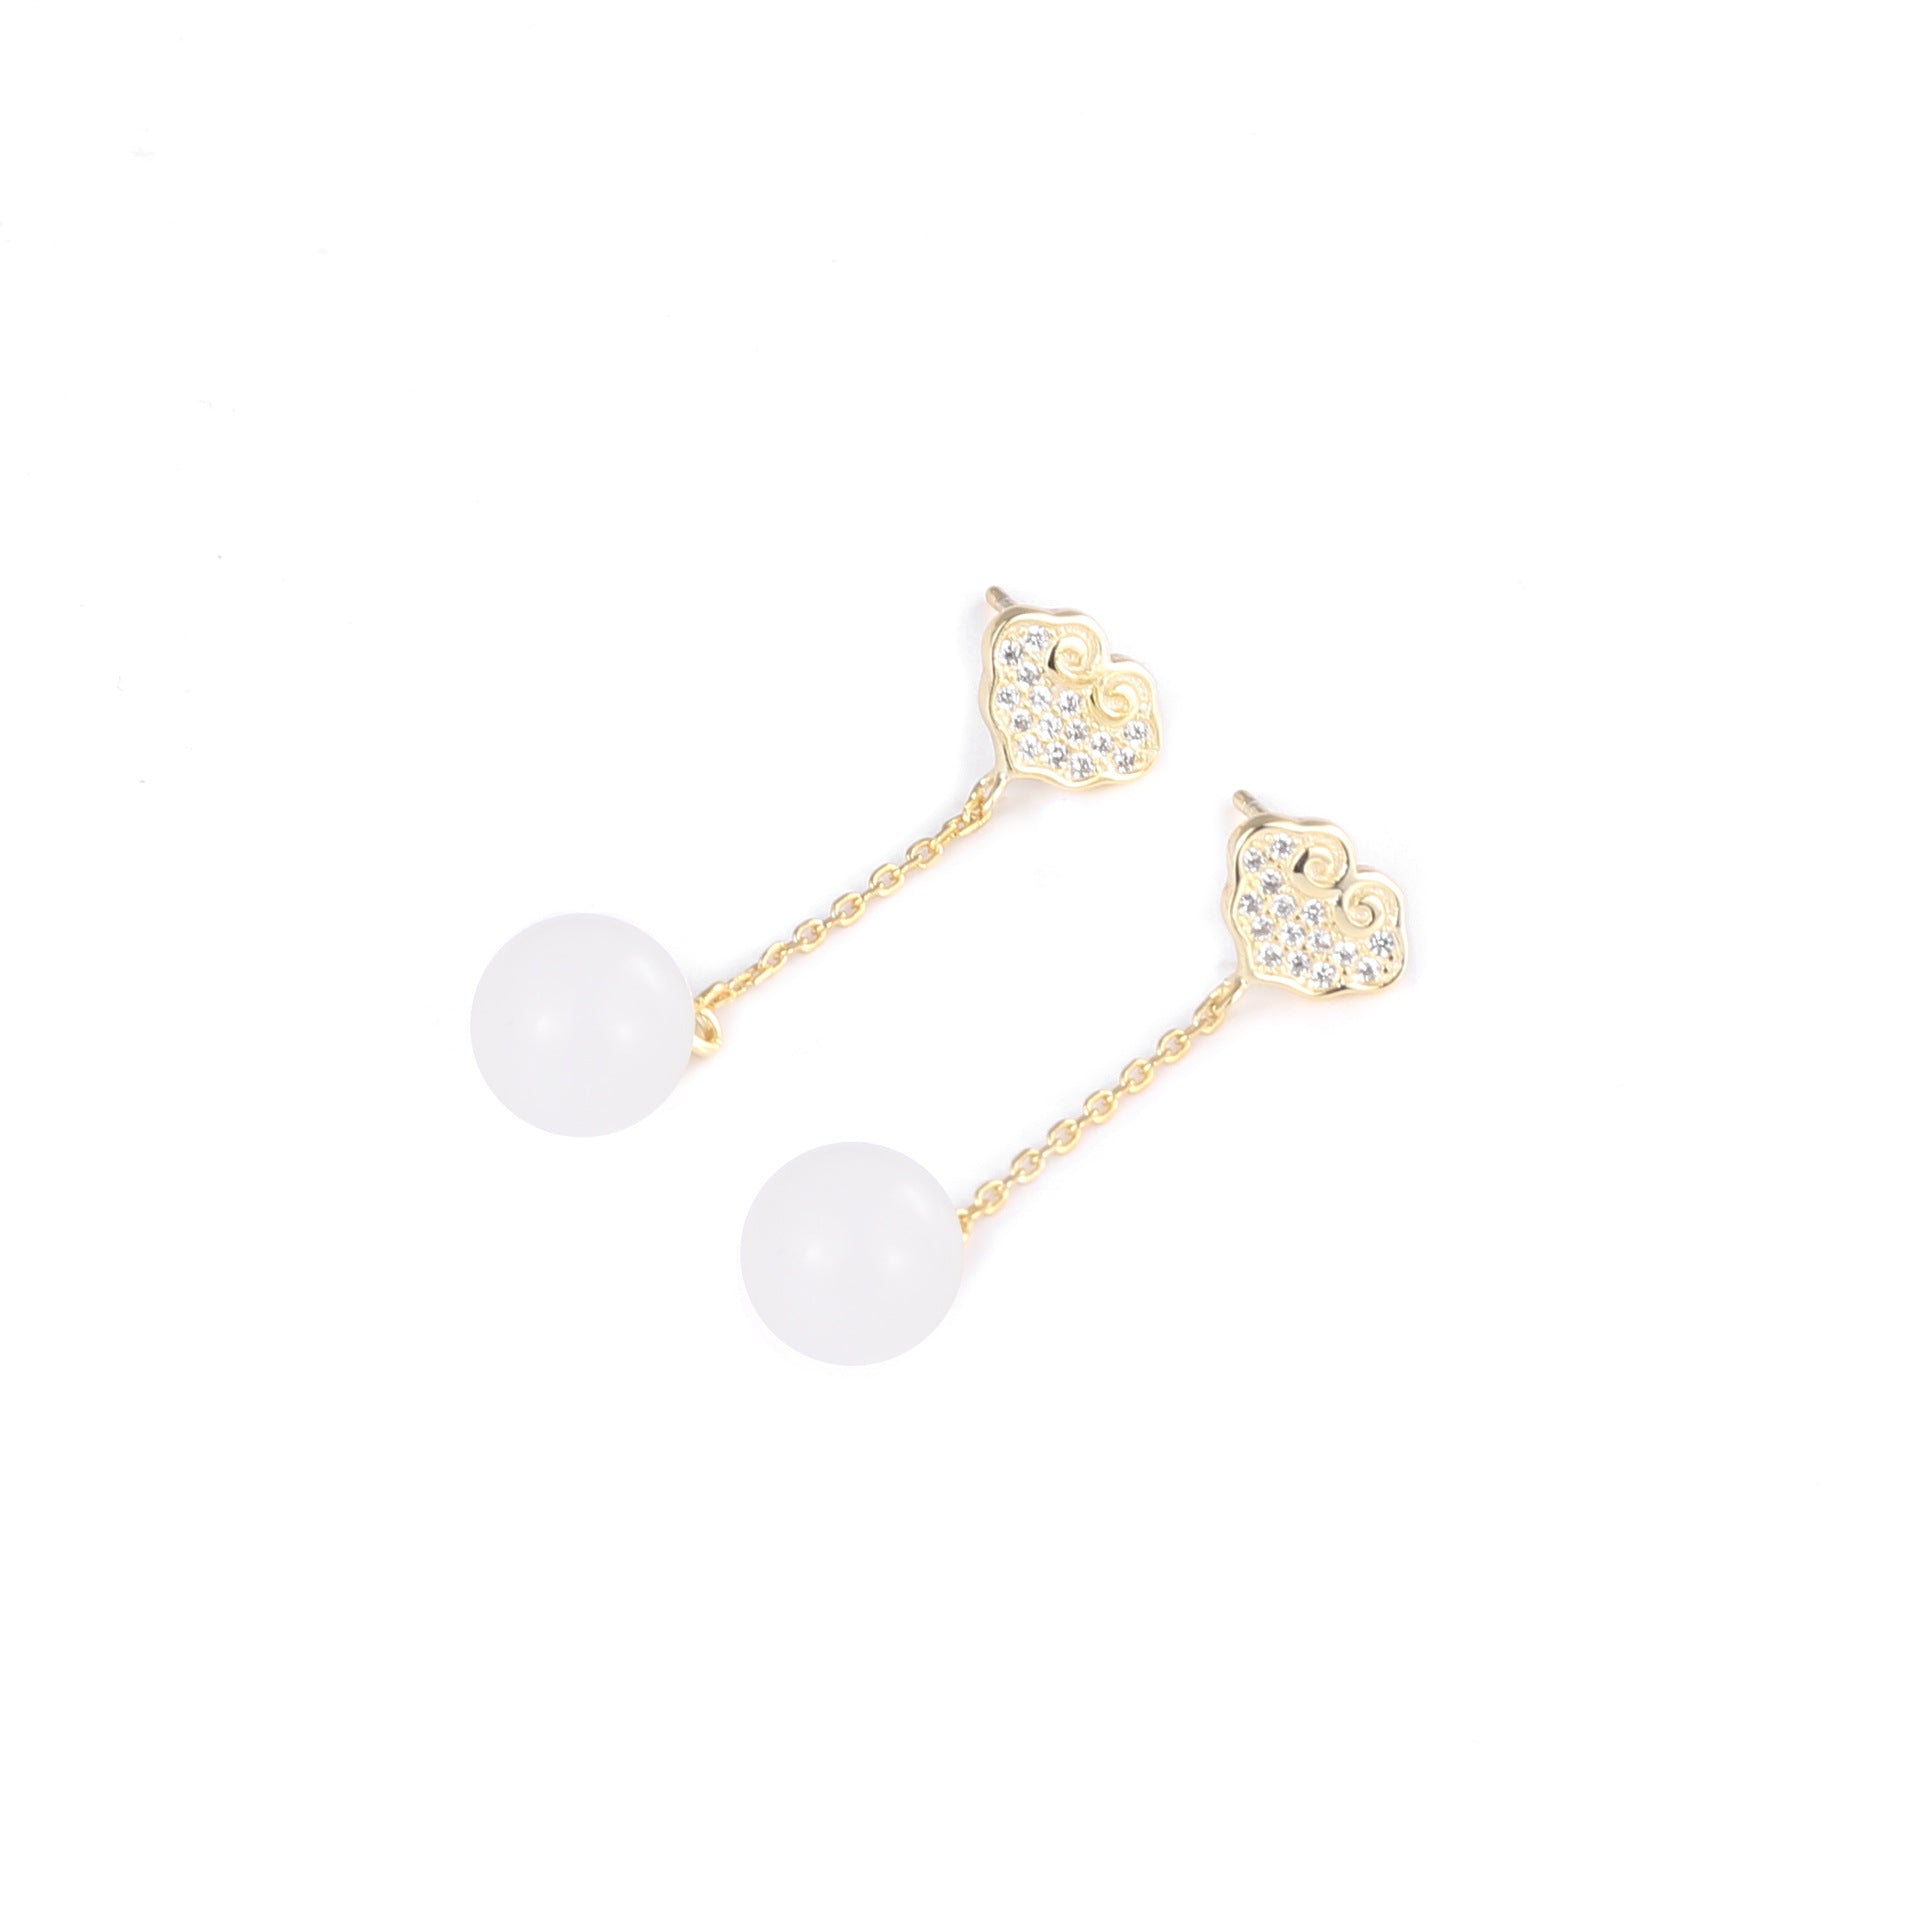 【Hetian Jade】S925 Silver Gold Tassels Bead White Hetian Jade Earrings